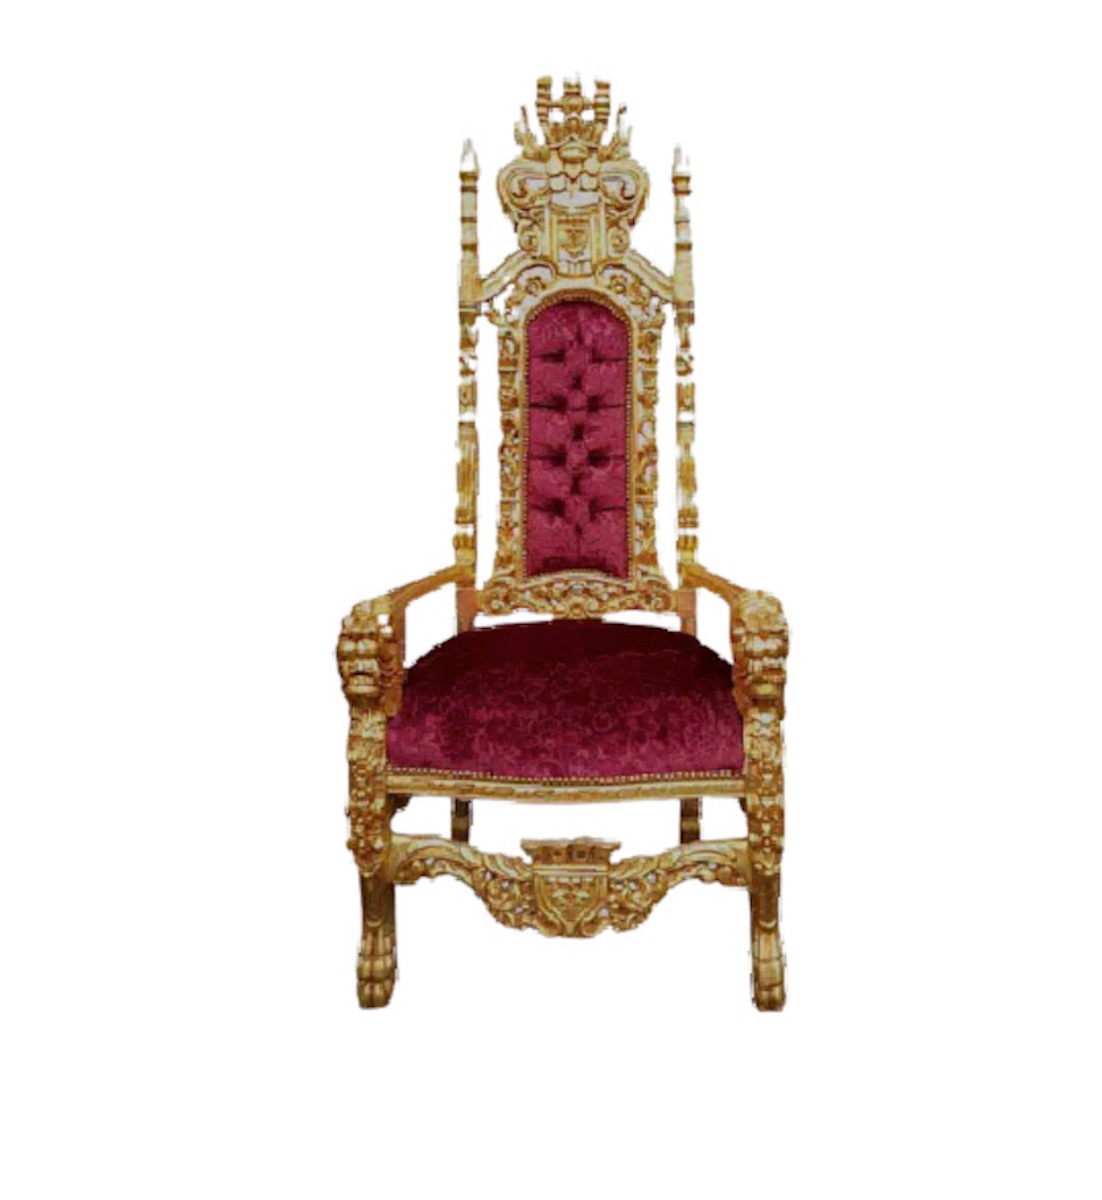 European Royal style Throne